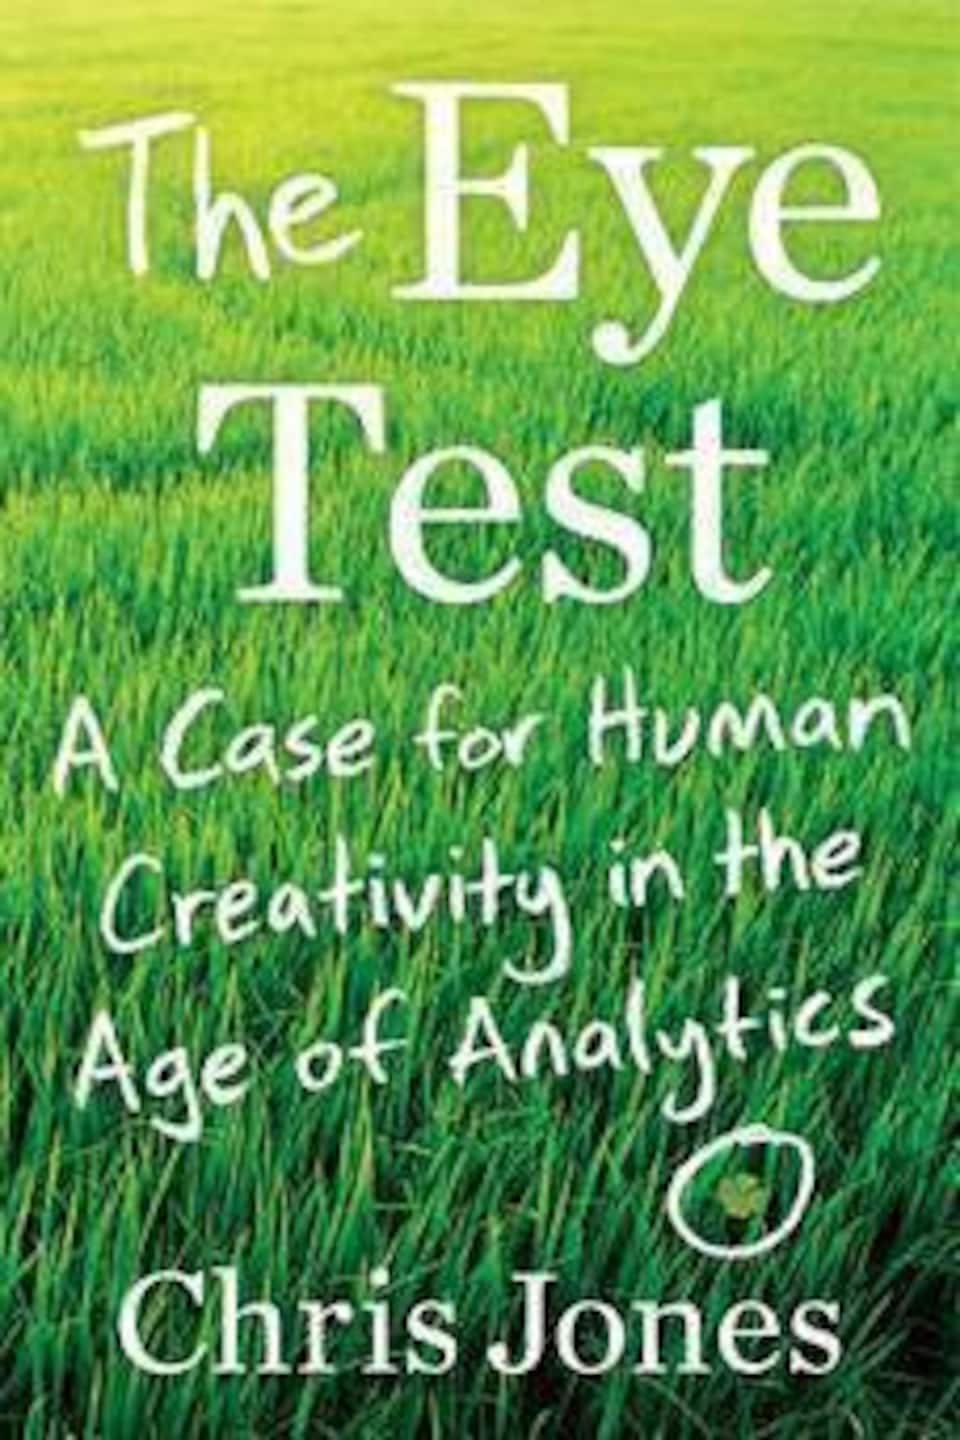 Couverture du livre The Eye Test, avec le titre du livre et le nom de l'auteur écrits en blanc sur un fond de pelouse